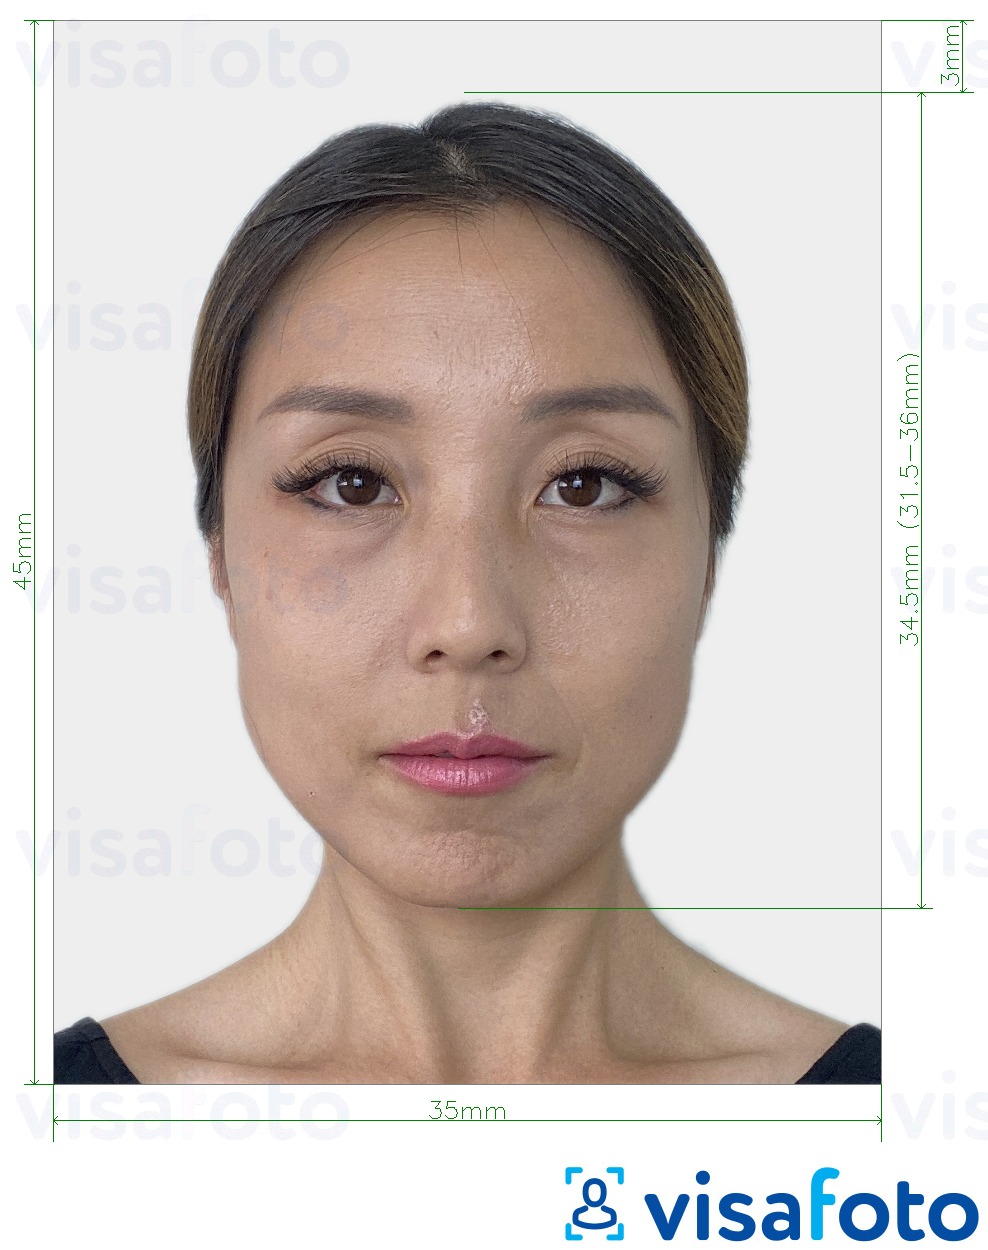 Exemples sur des photos pour Visa Japon 35x45 mm avec les spécifications de taille exactes